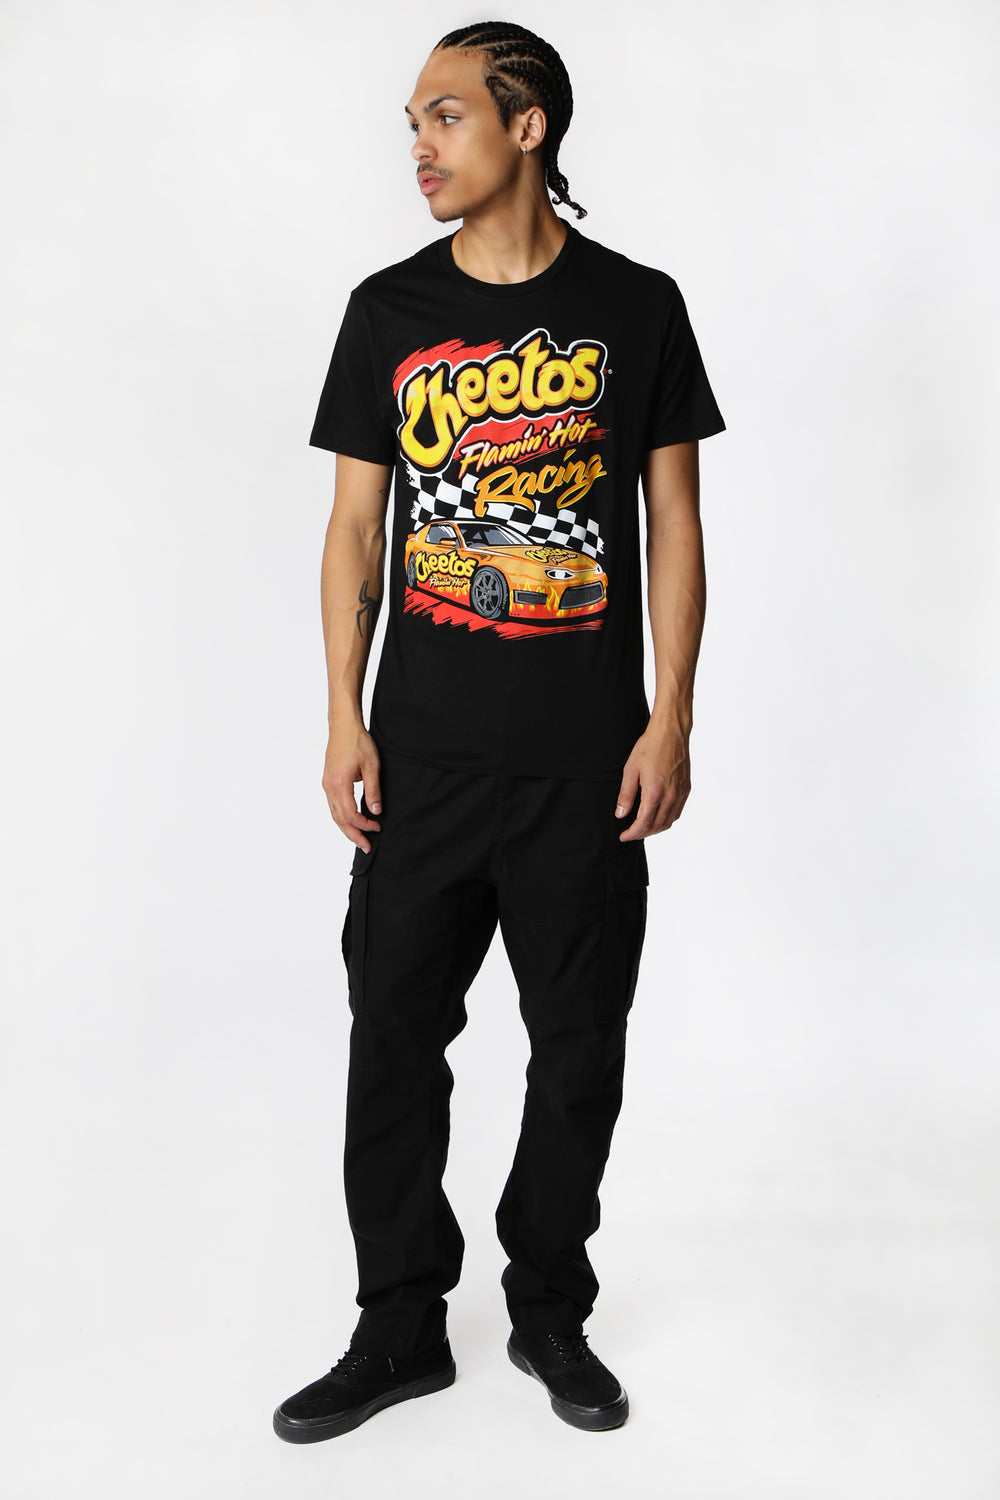 Mens Cheetos Flamin' Hot Racing T-Shirt Mens Cheetos Flamin' Hot Racing T-Shirt